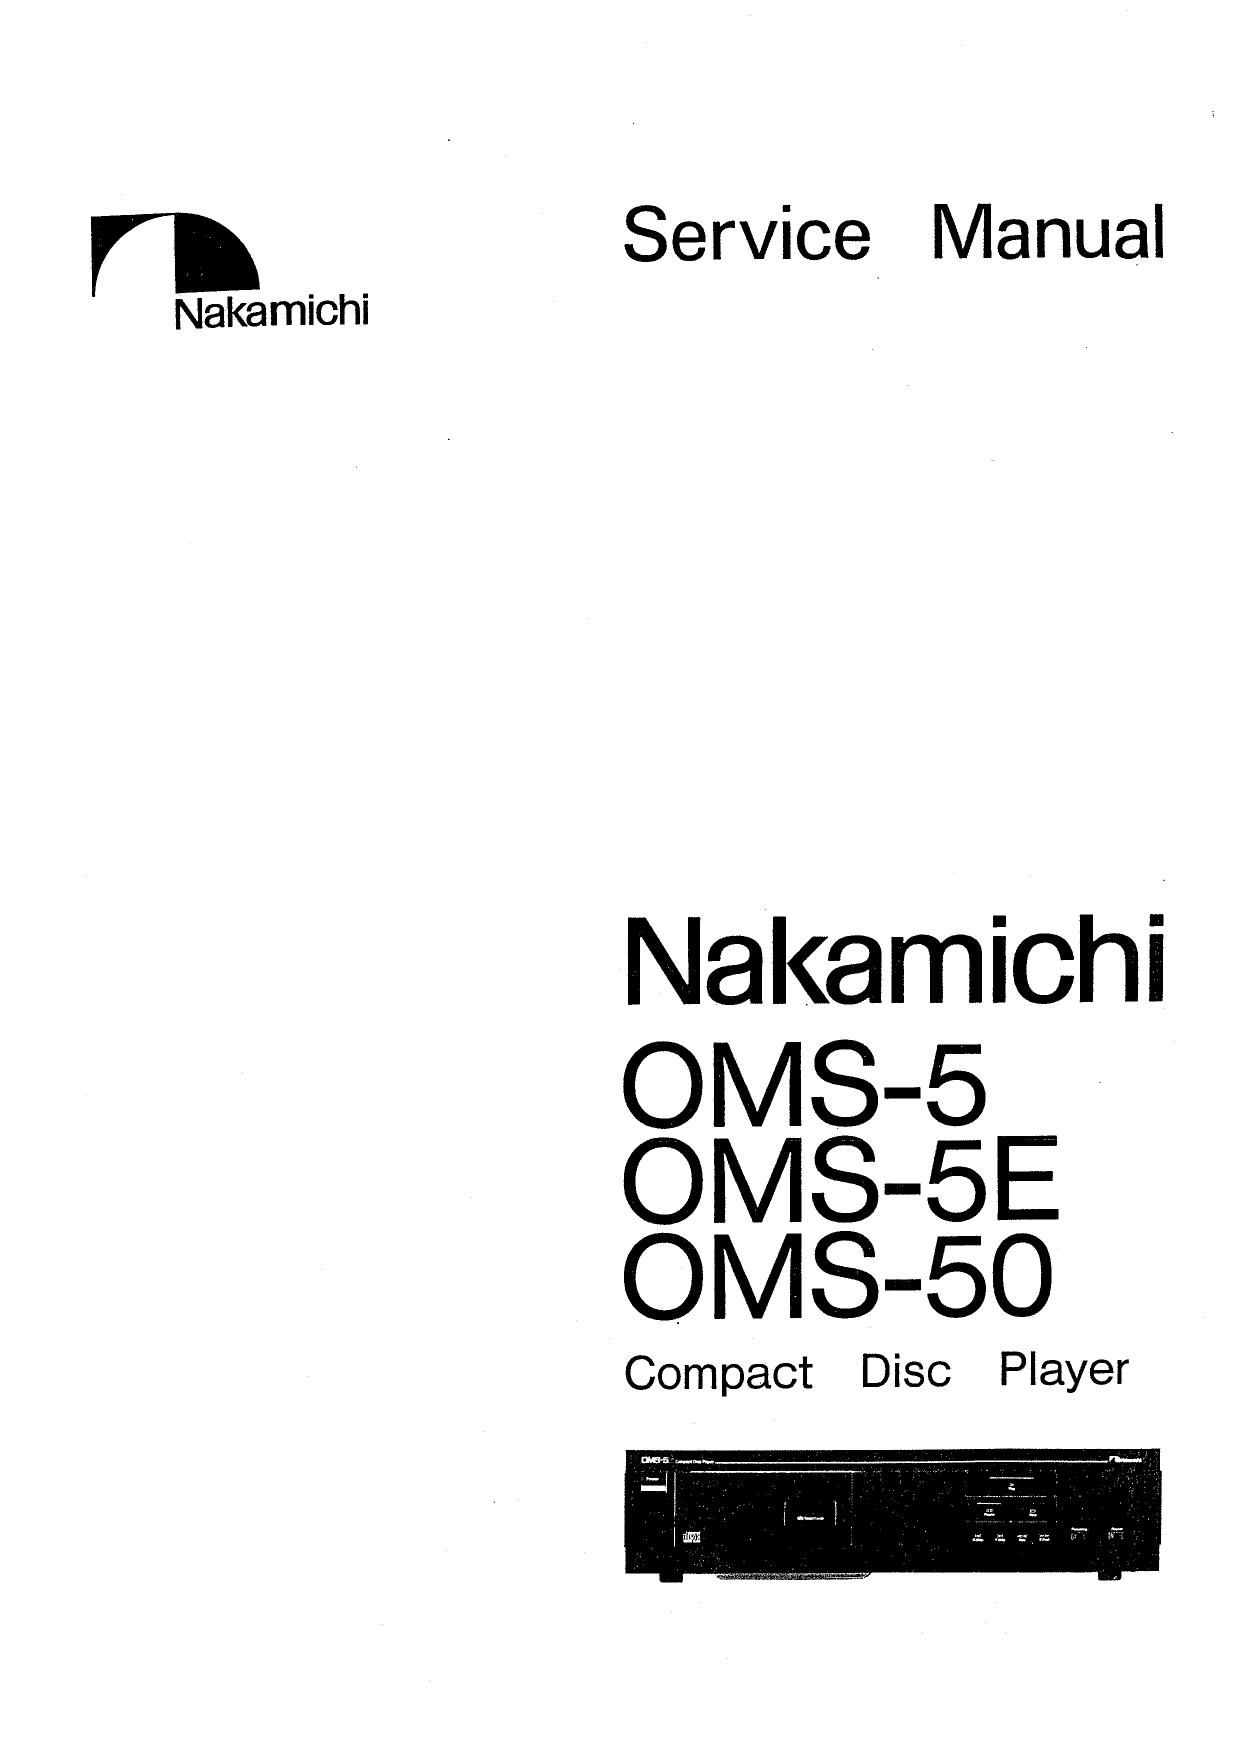 Nakamichi OMS 50 Service Manual